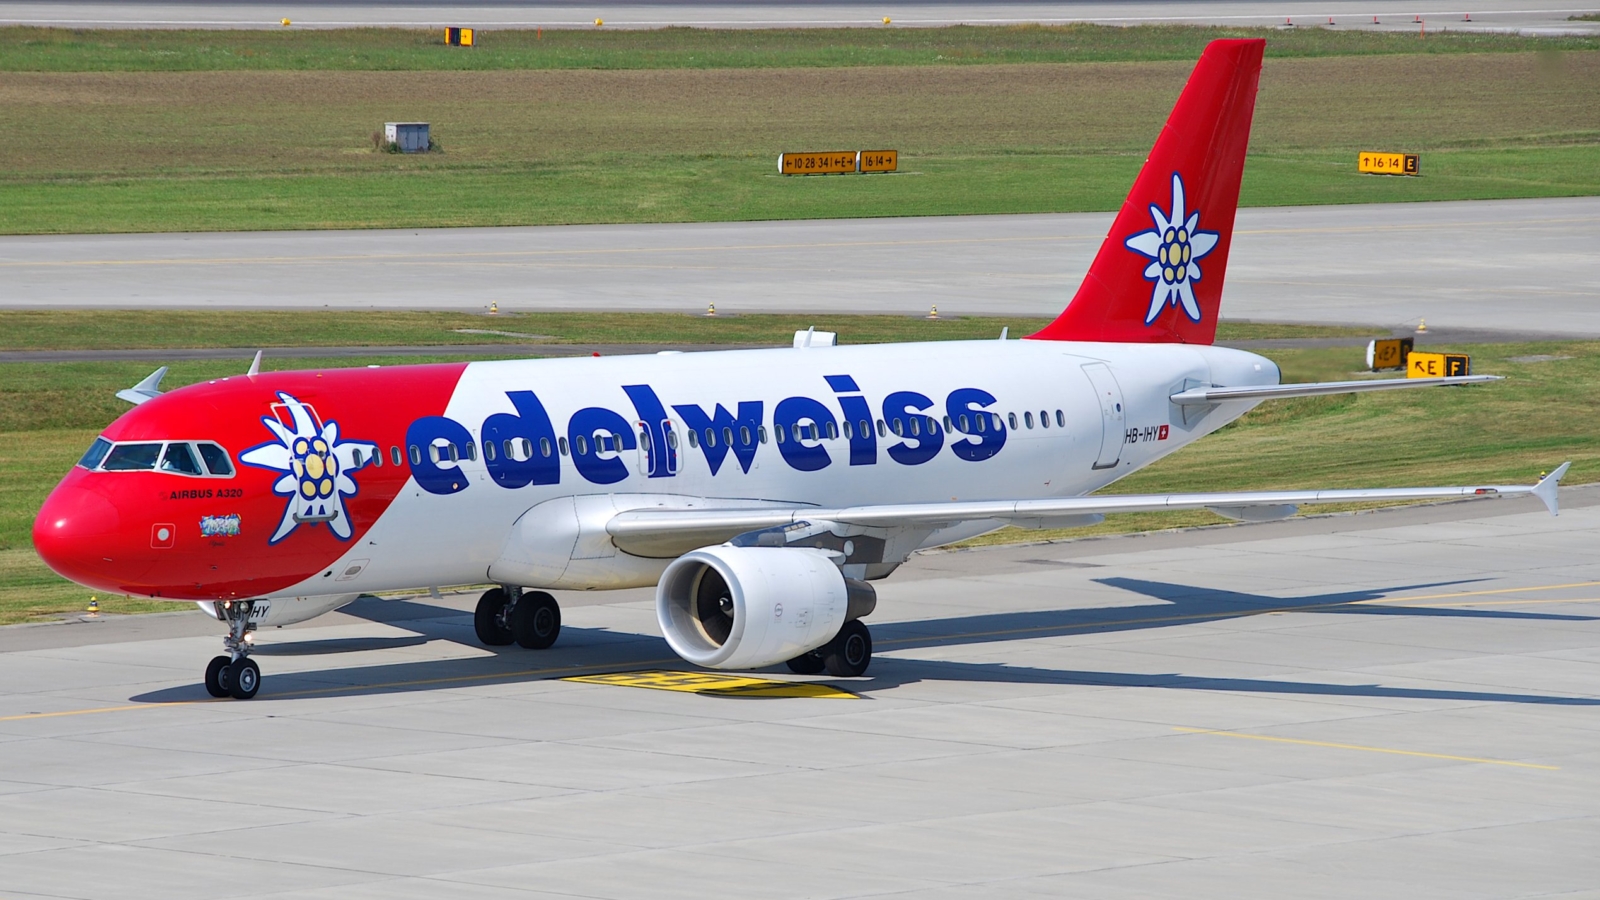 Edelweiss_Air_Airbus_A320-214;_HB-IHY@ZRH;10.09.2009_555dv_(4329679721)